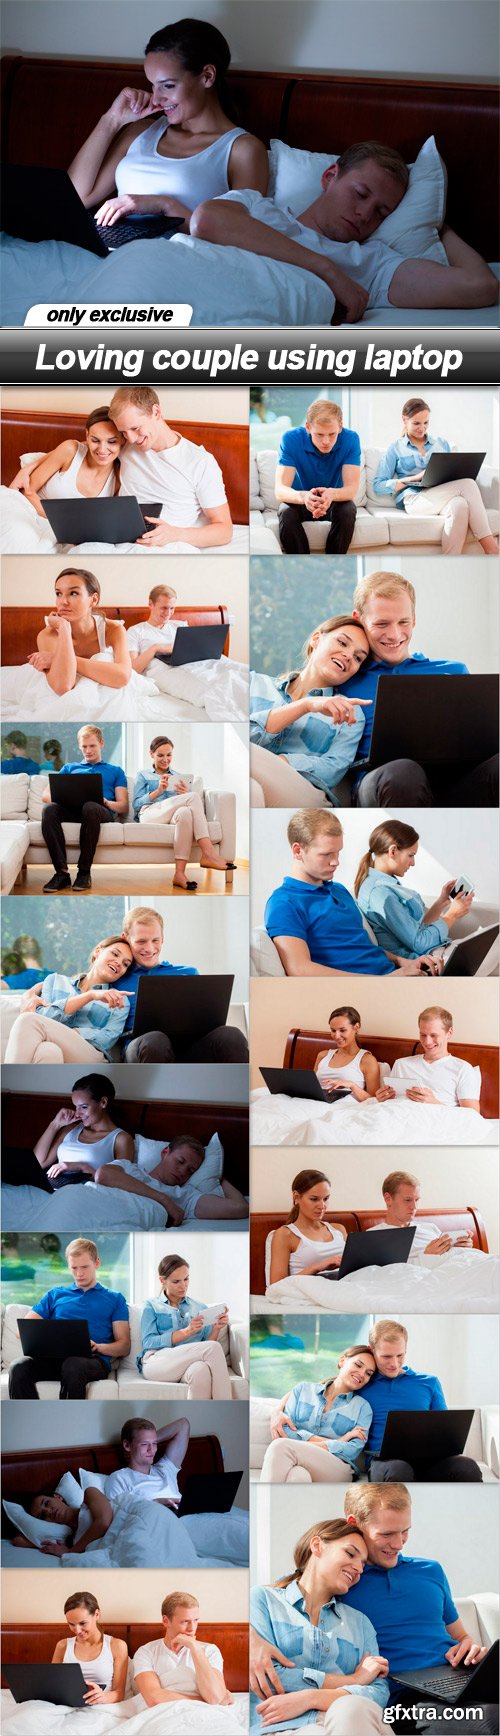 Loving couple using laptop - 15 UHQ JPEG